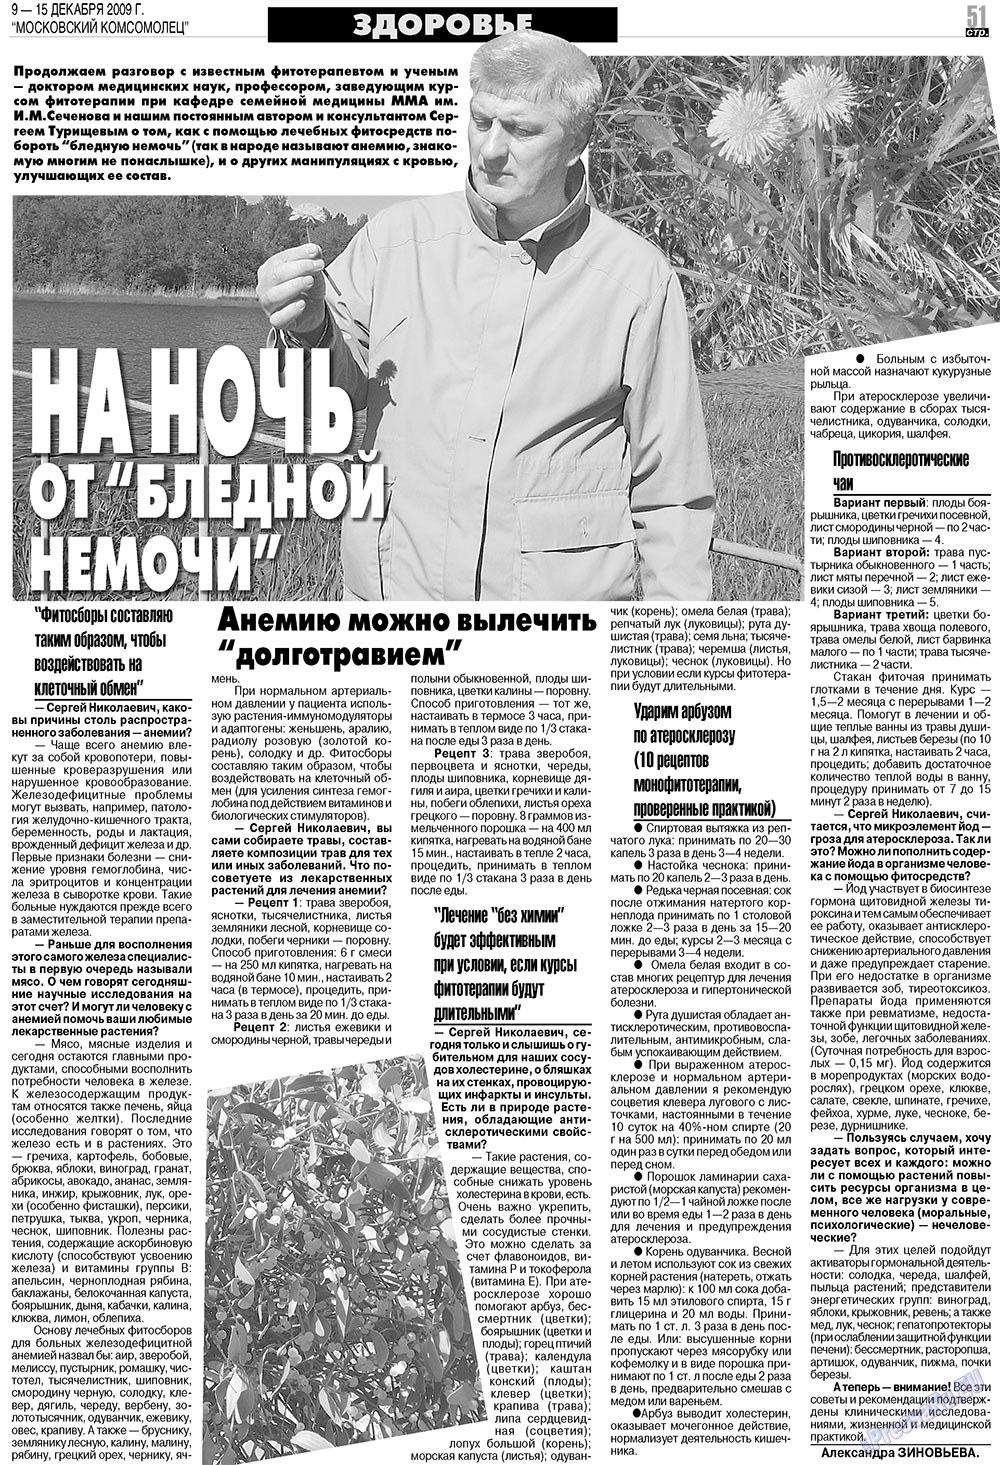 МК Испания, газета. 2009 №50 стр.51